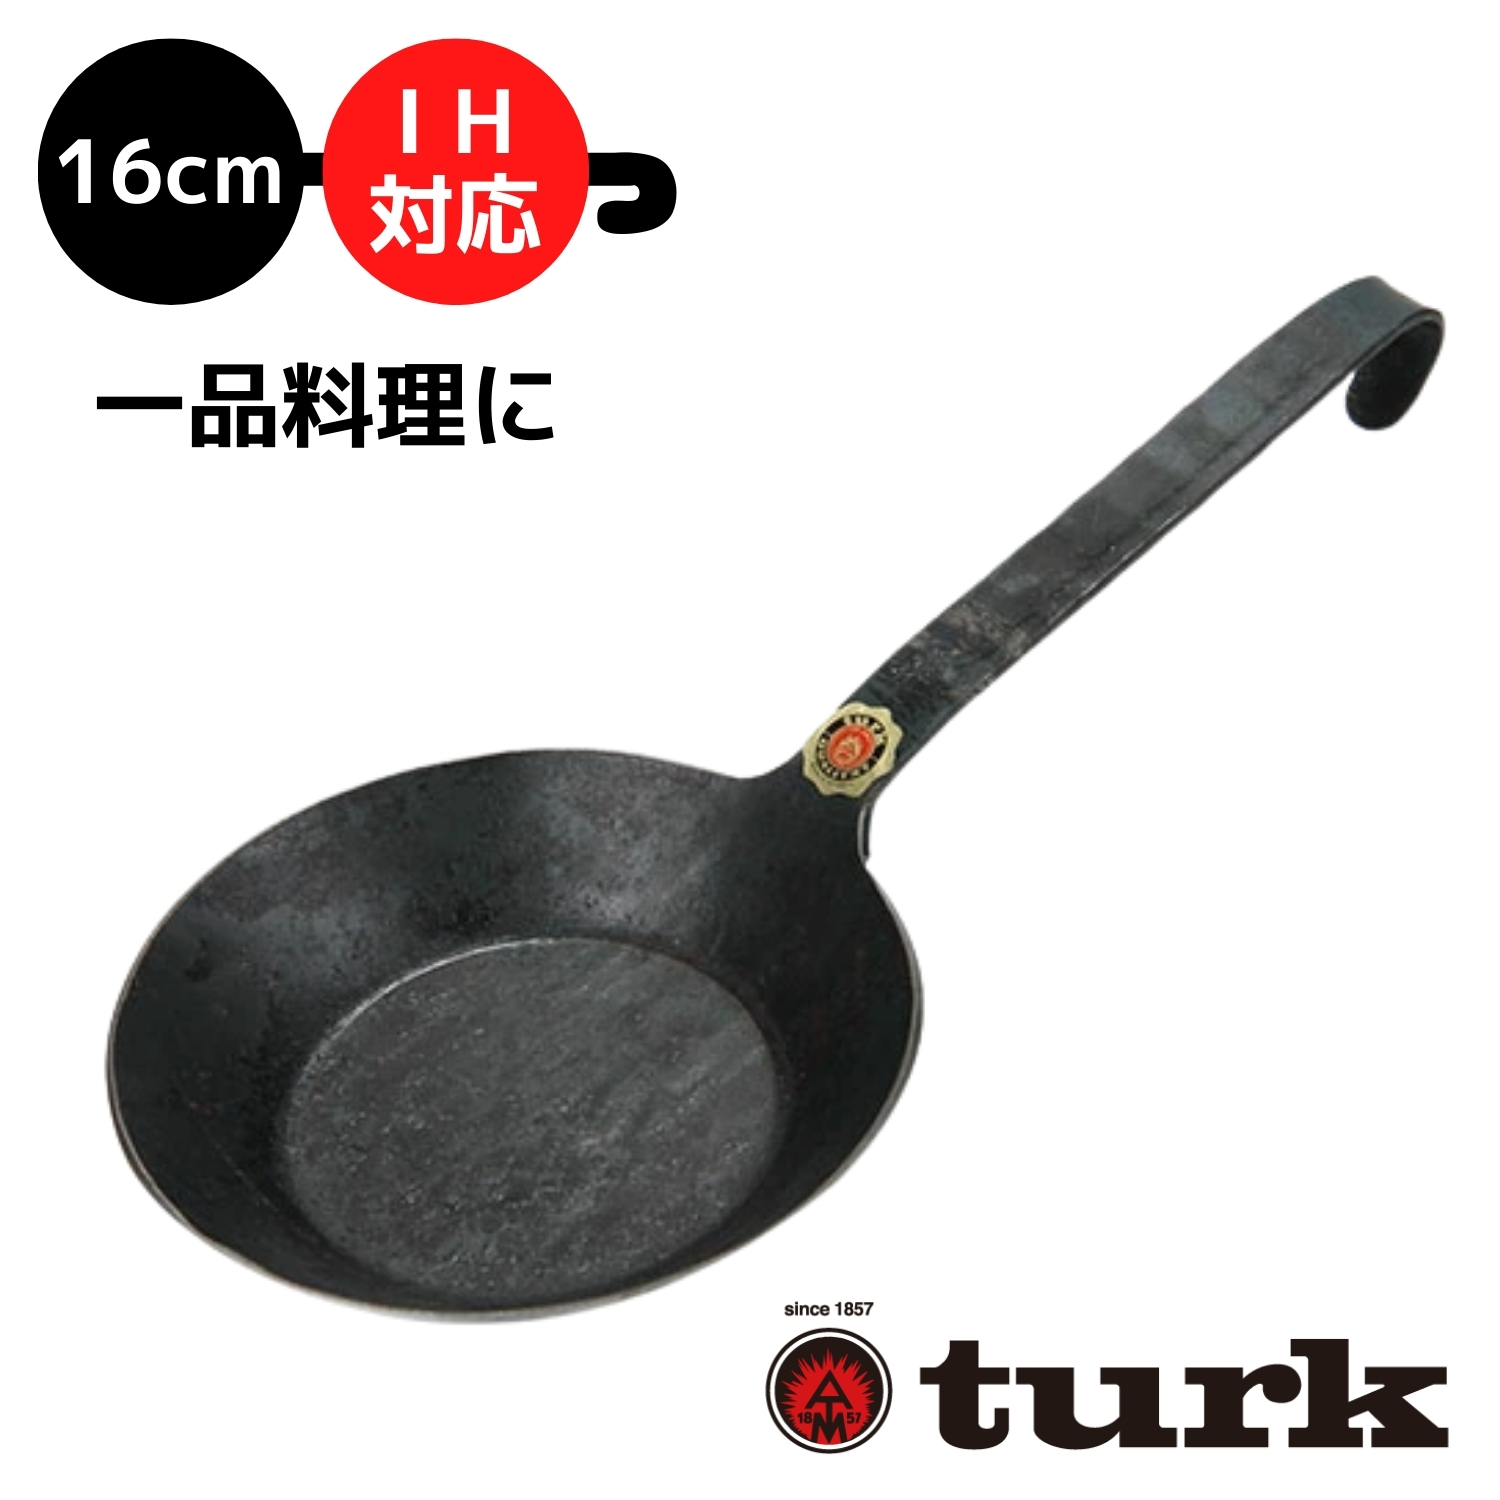 【楽天市場】turk フライパン サイズ 16cm IH対応 一品料理に